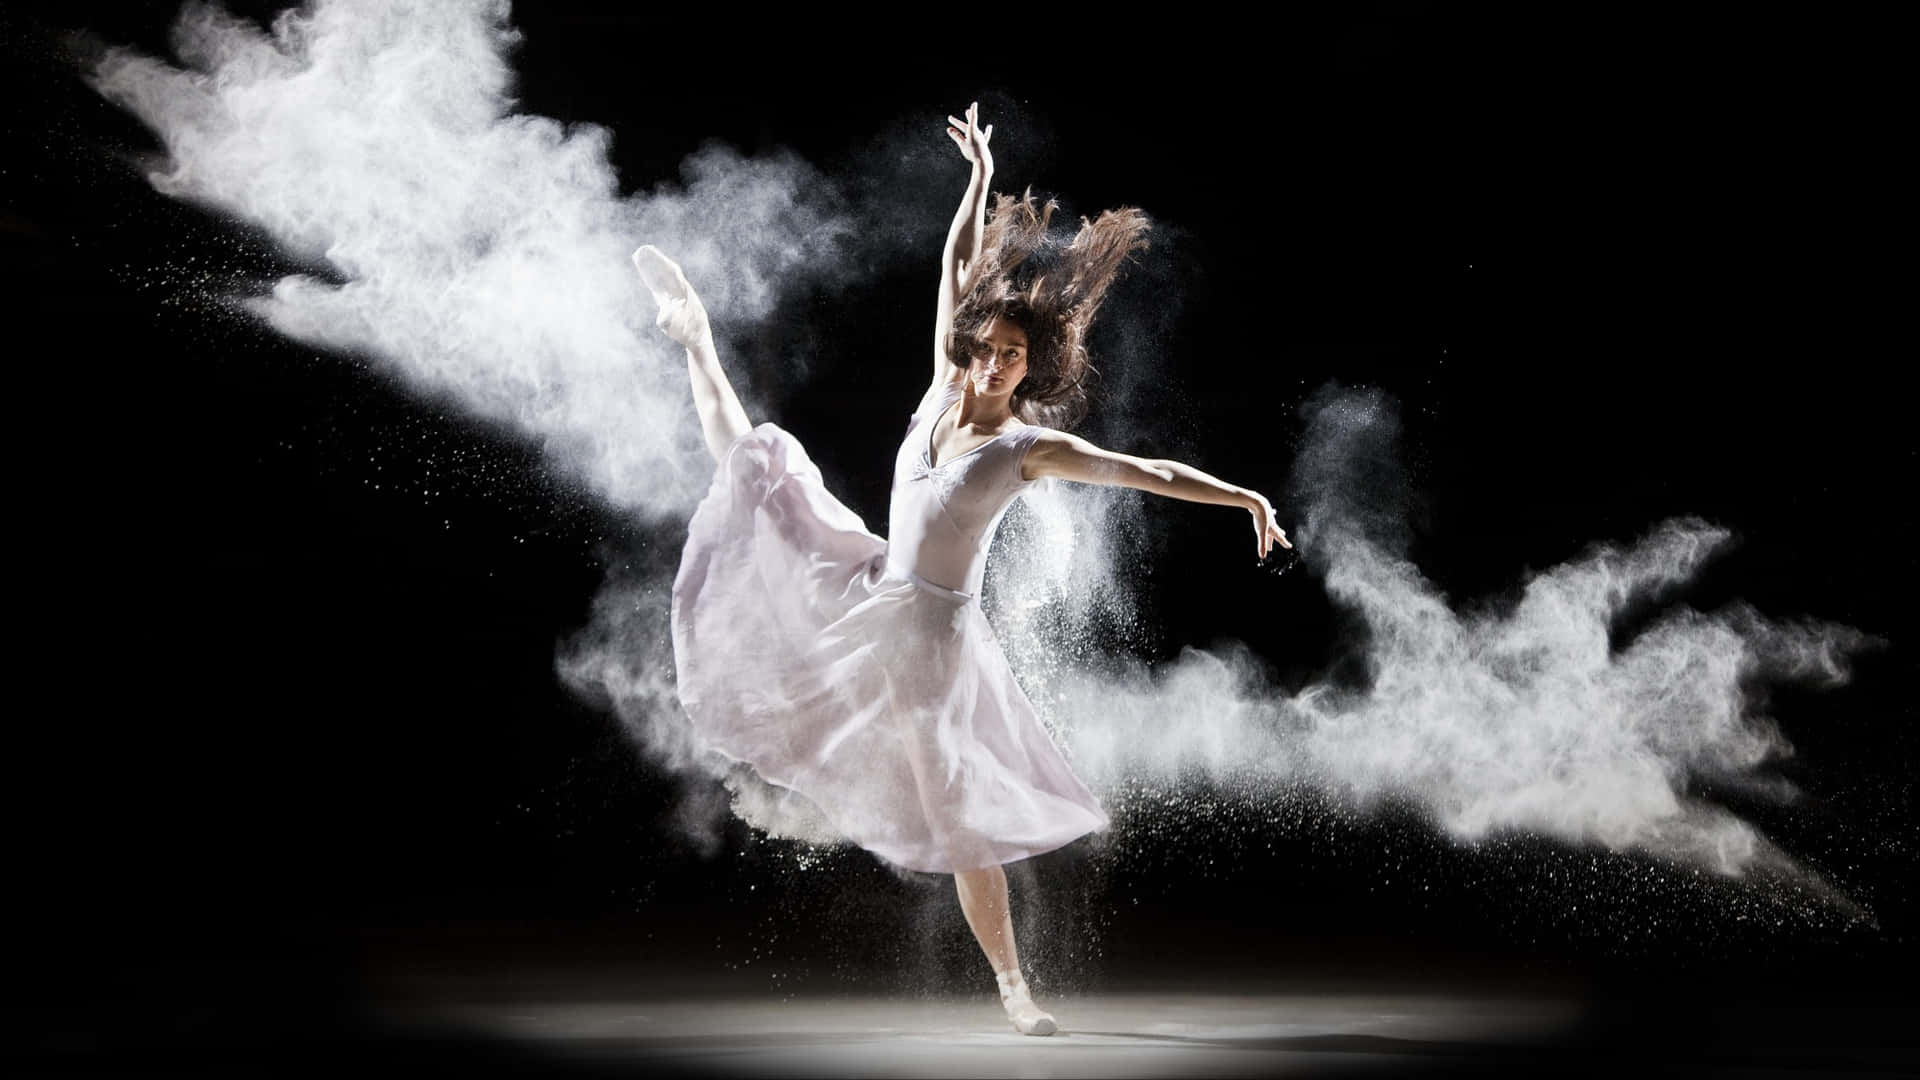 Ragazzache Balla Il Balletto Con Un'immagine Di Fumo